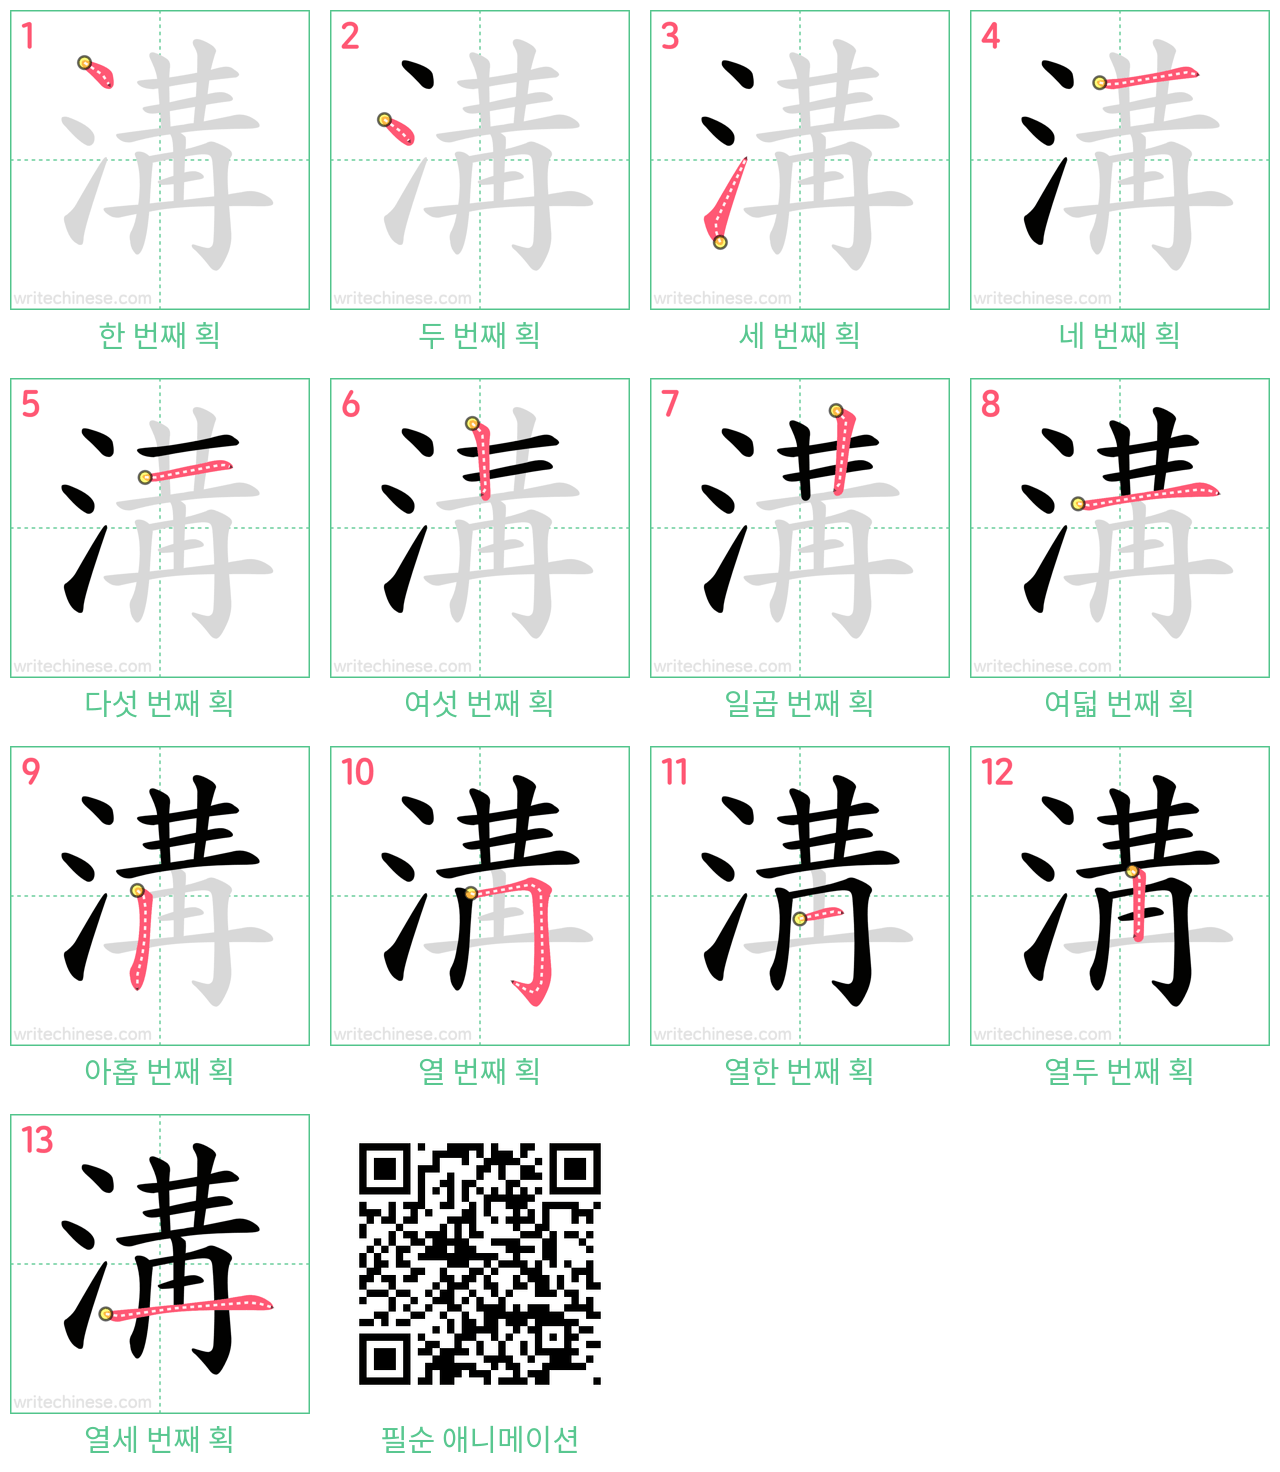 溝 step-by-step stroke order diagrams